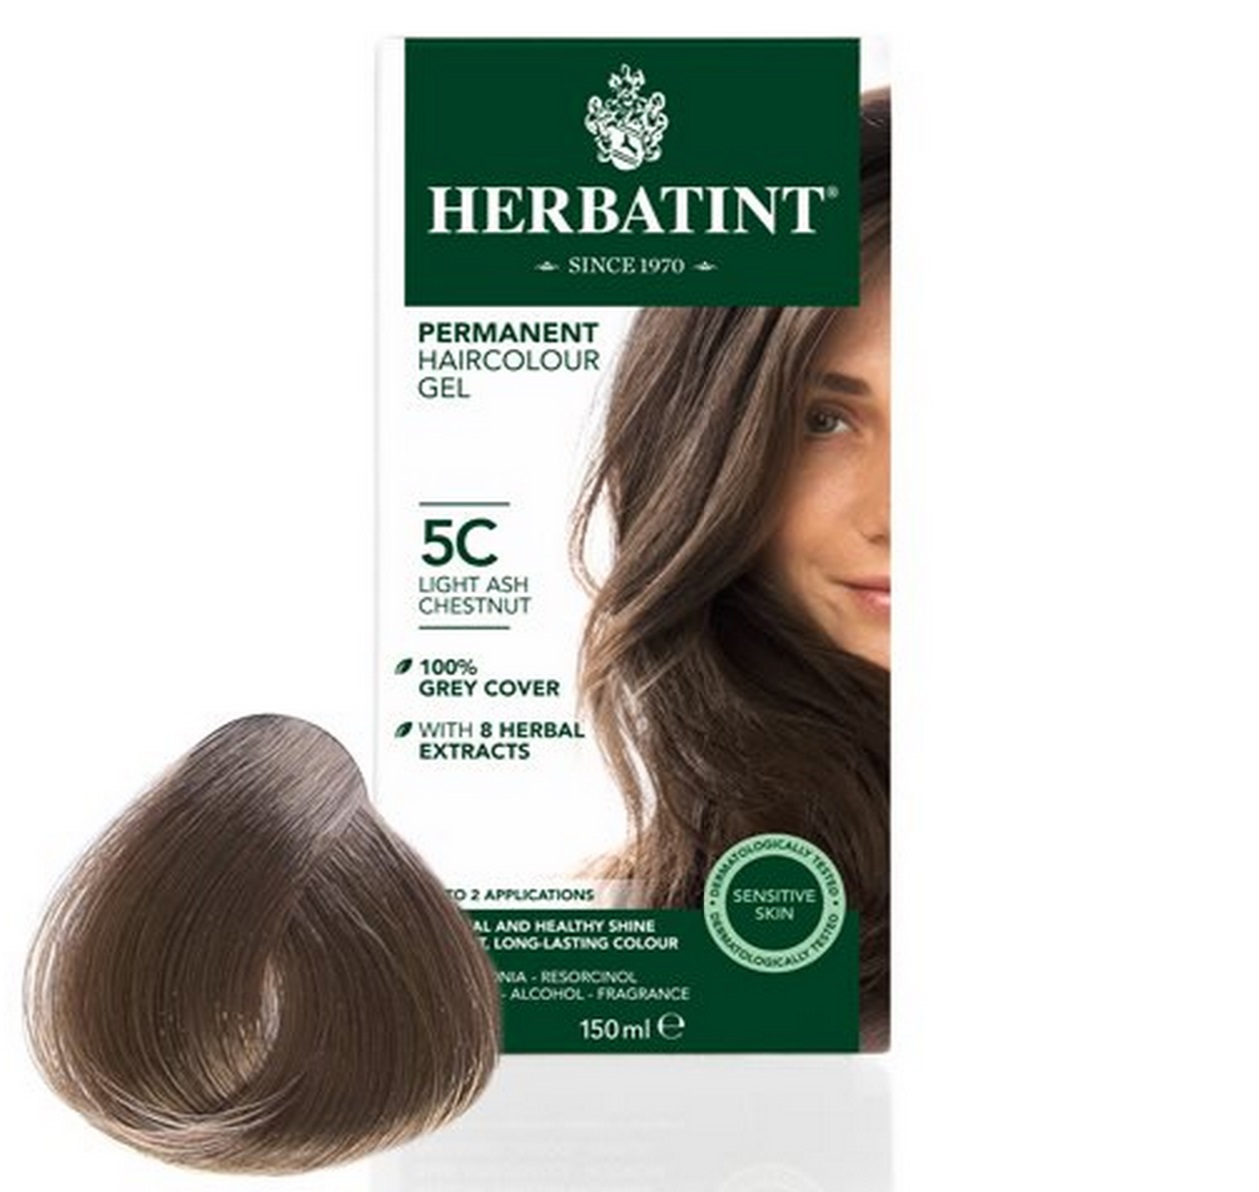 Billede af Herbatint 5C hårfarve Light Ash Chestnut, 150ml. hos Ren-velvaereshop.dk